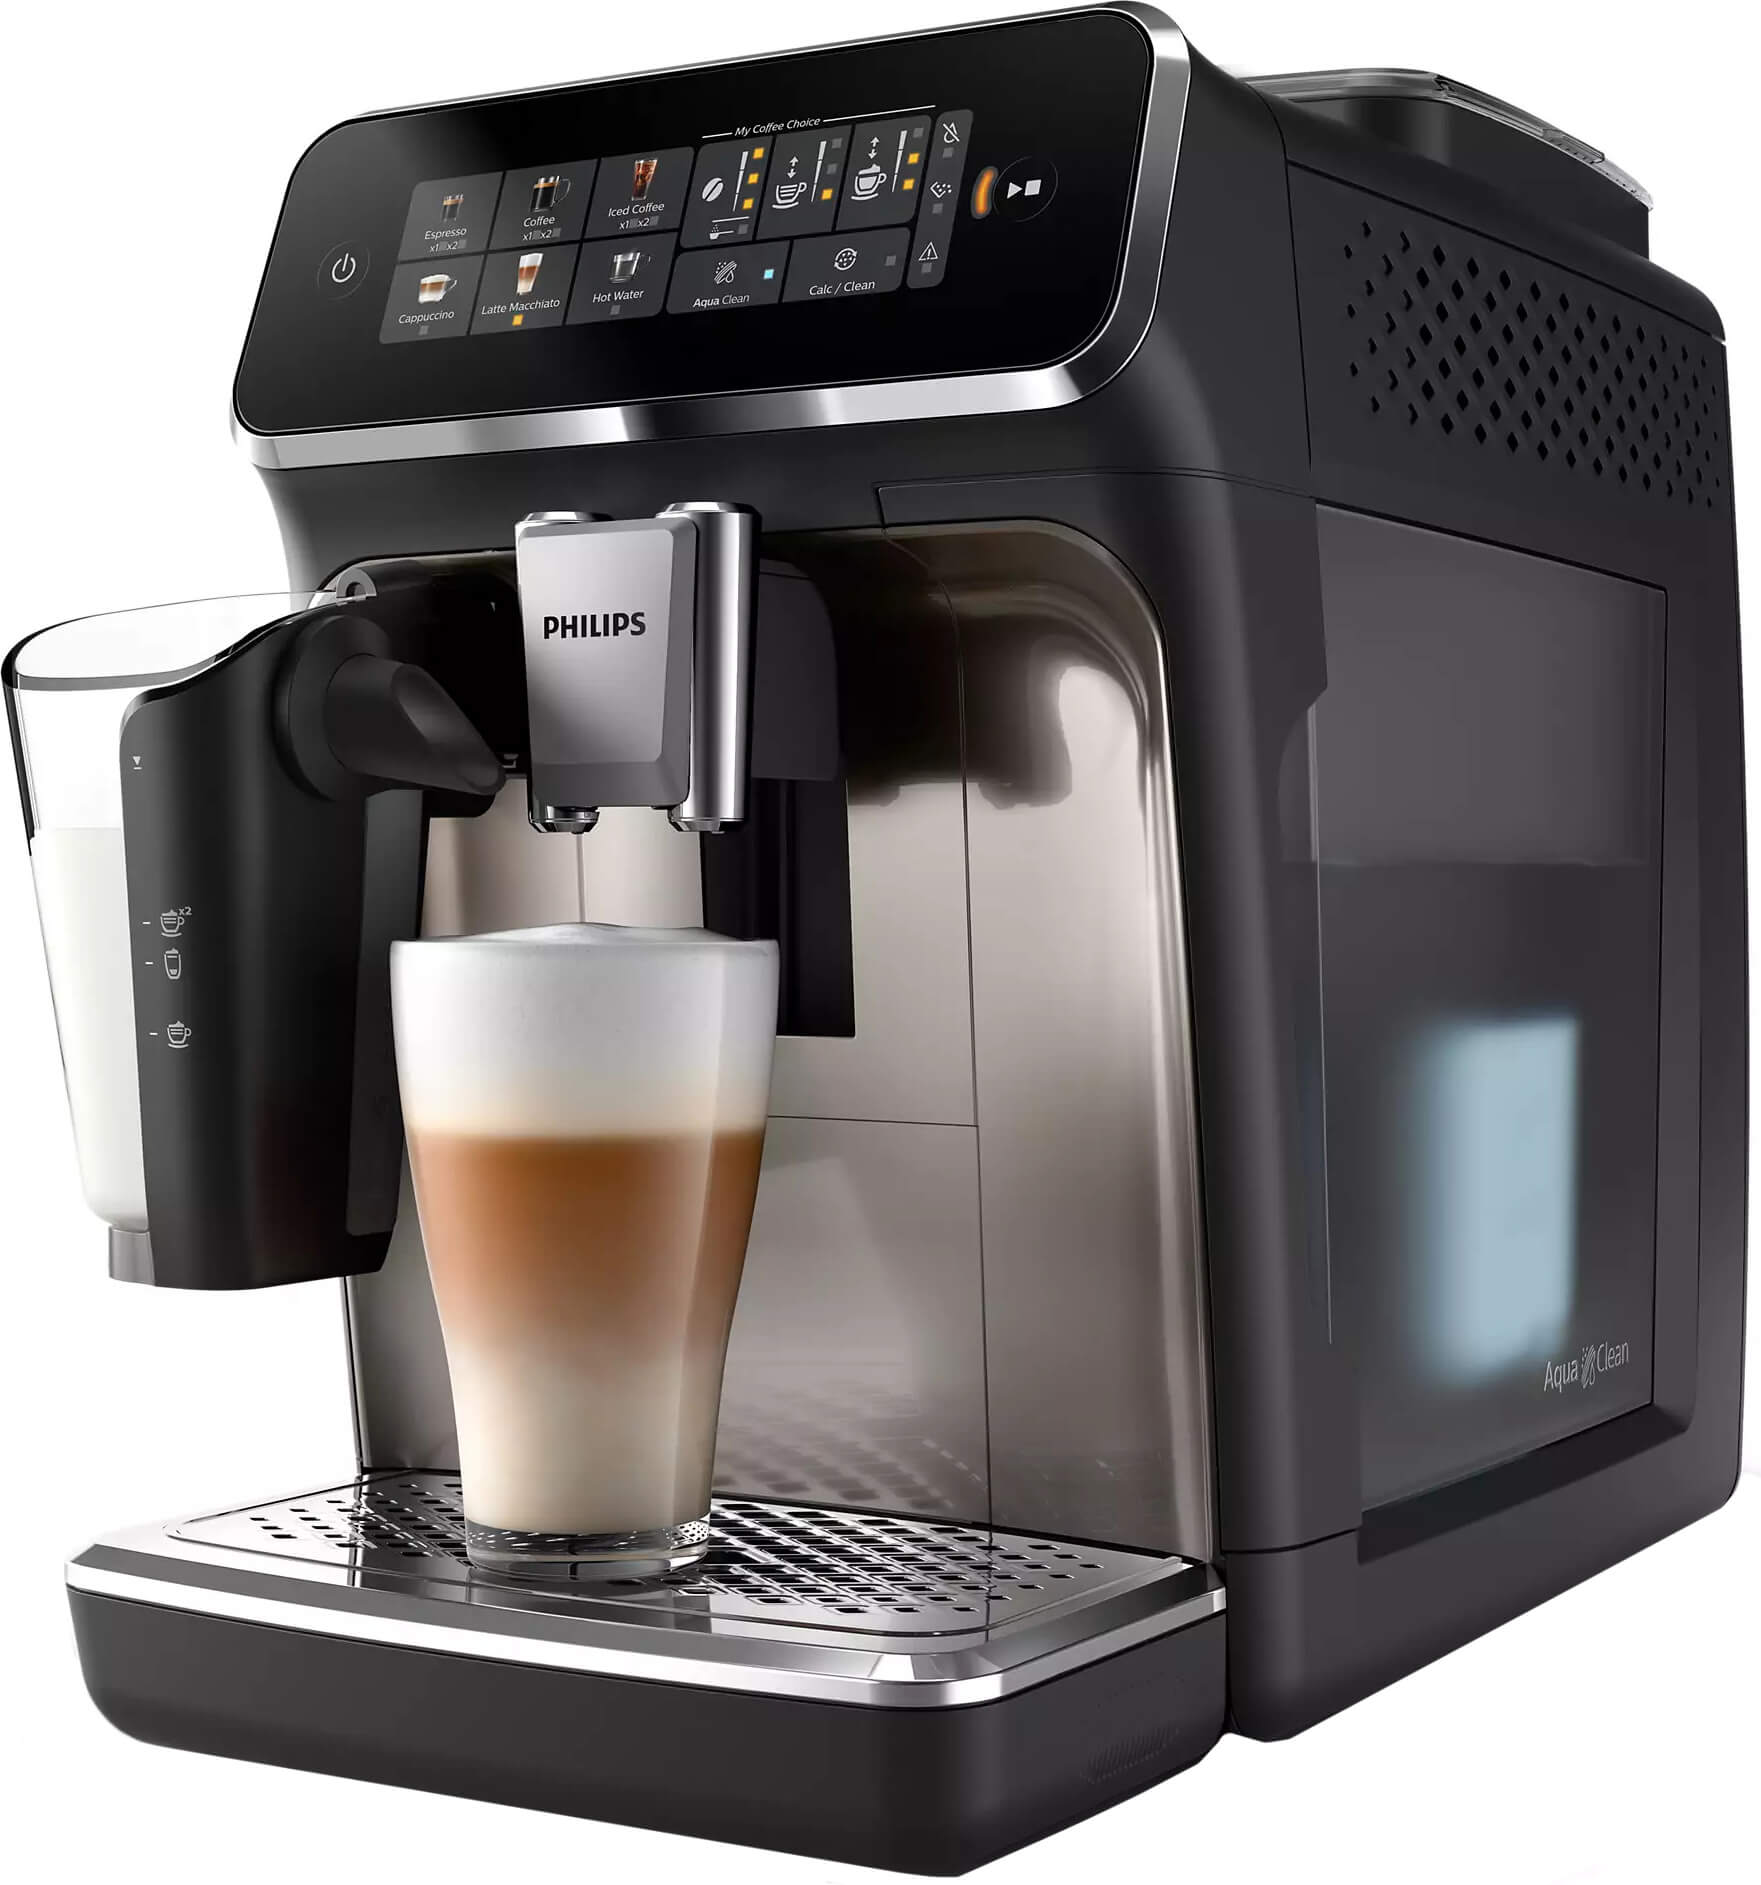 NUEVA Philips 3300, Opinión, comparativa y precios – Mr. Coffee Reviews